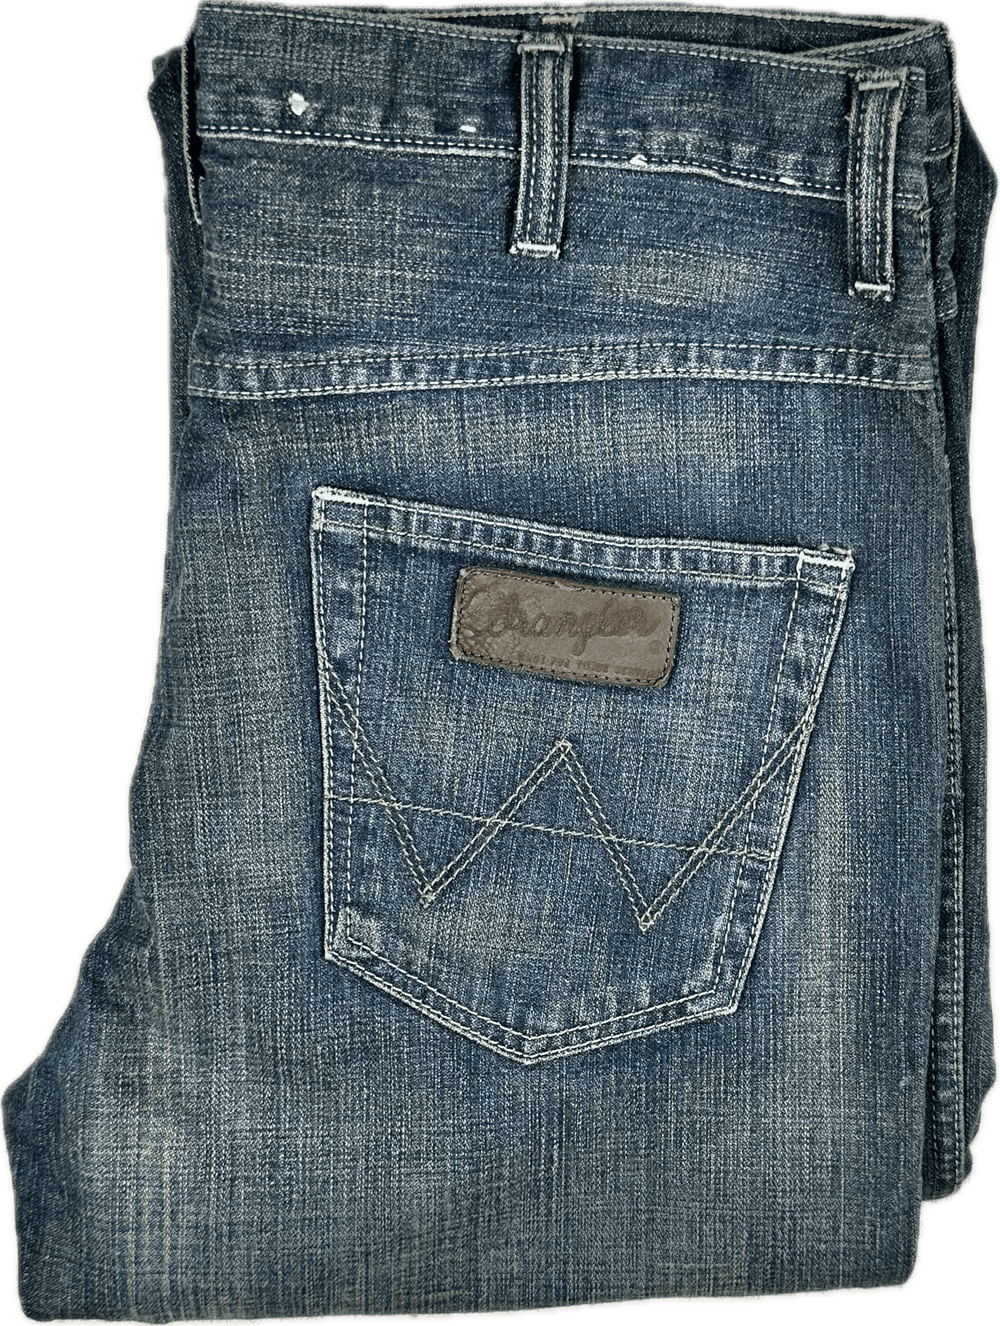 Wrangler Mens Classic 'Alaska' Jeans - Size 33 - Jean Pool